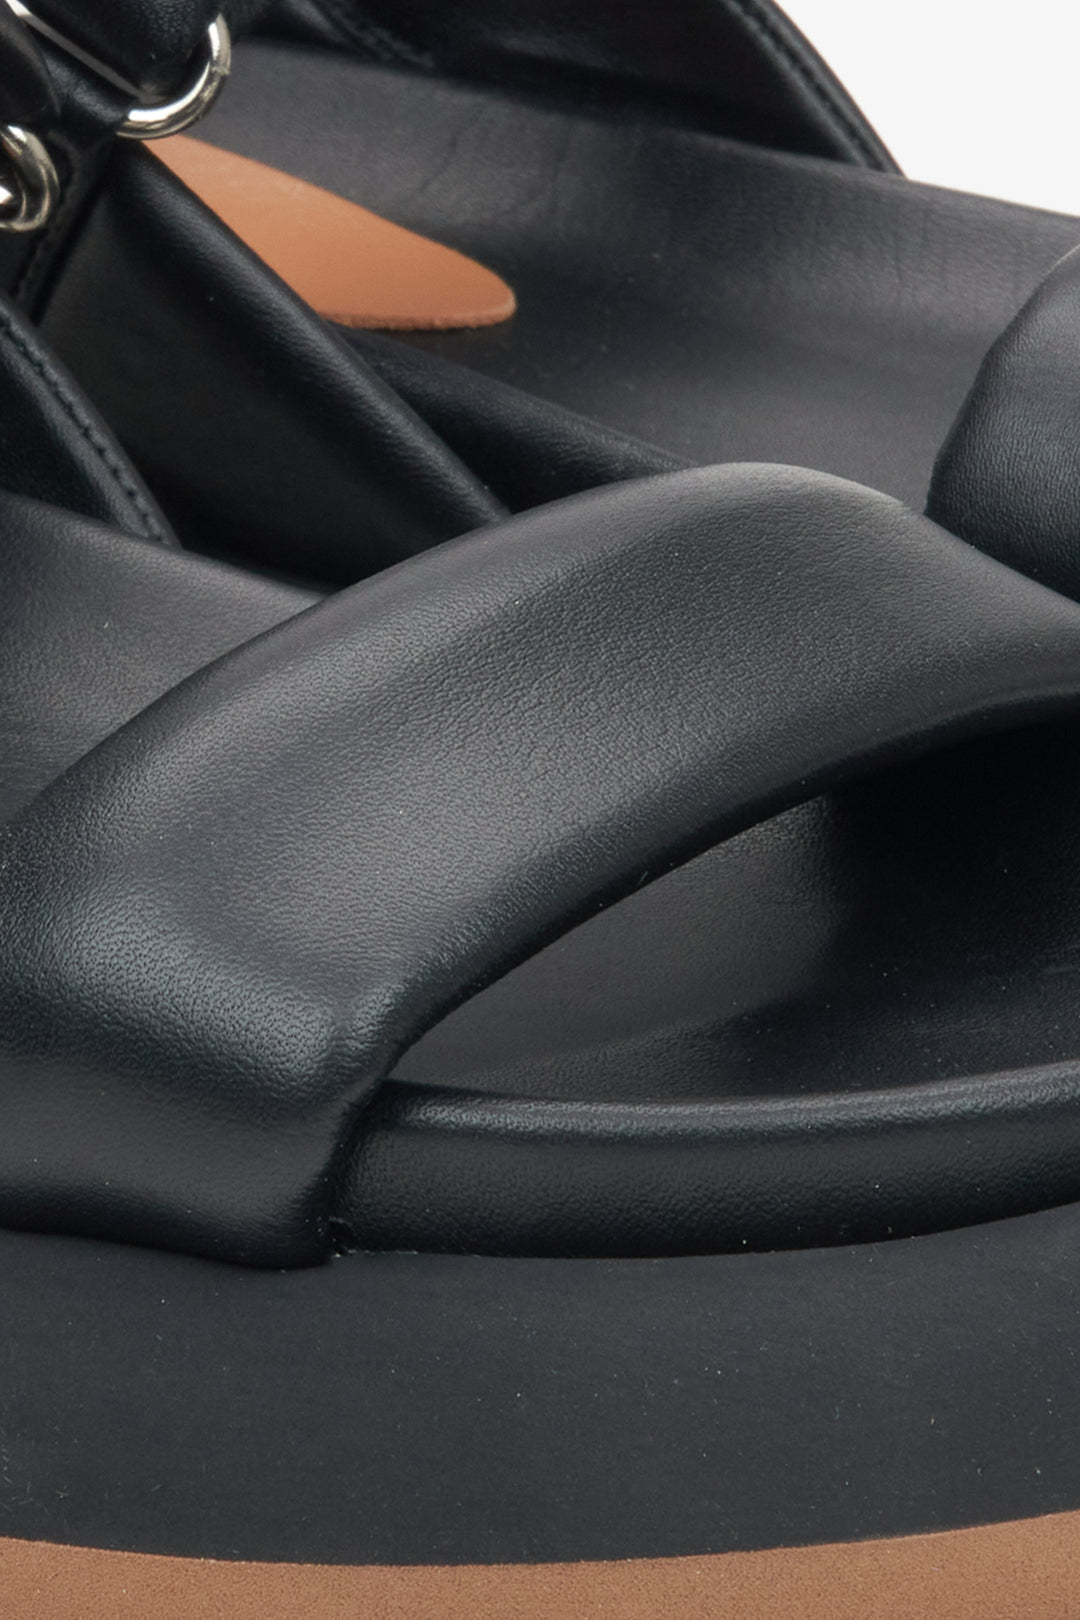 Czarne skórzane sandały damskie Estro - zbliżenie na detale.